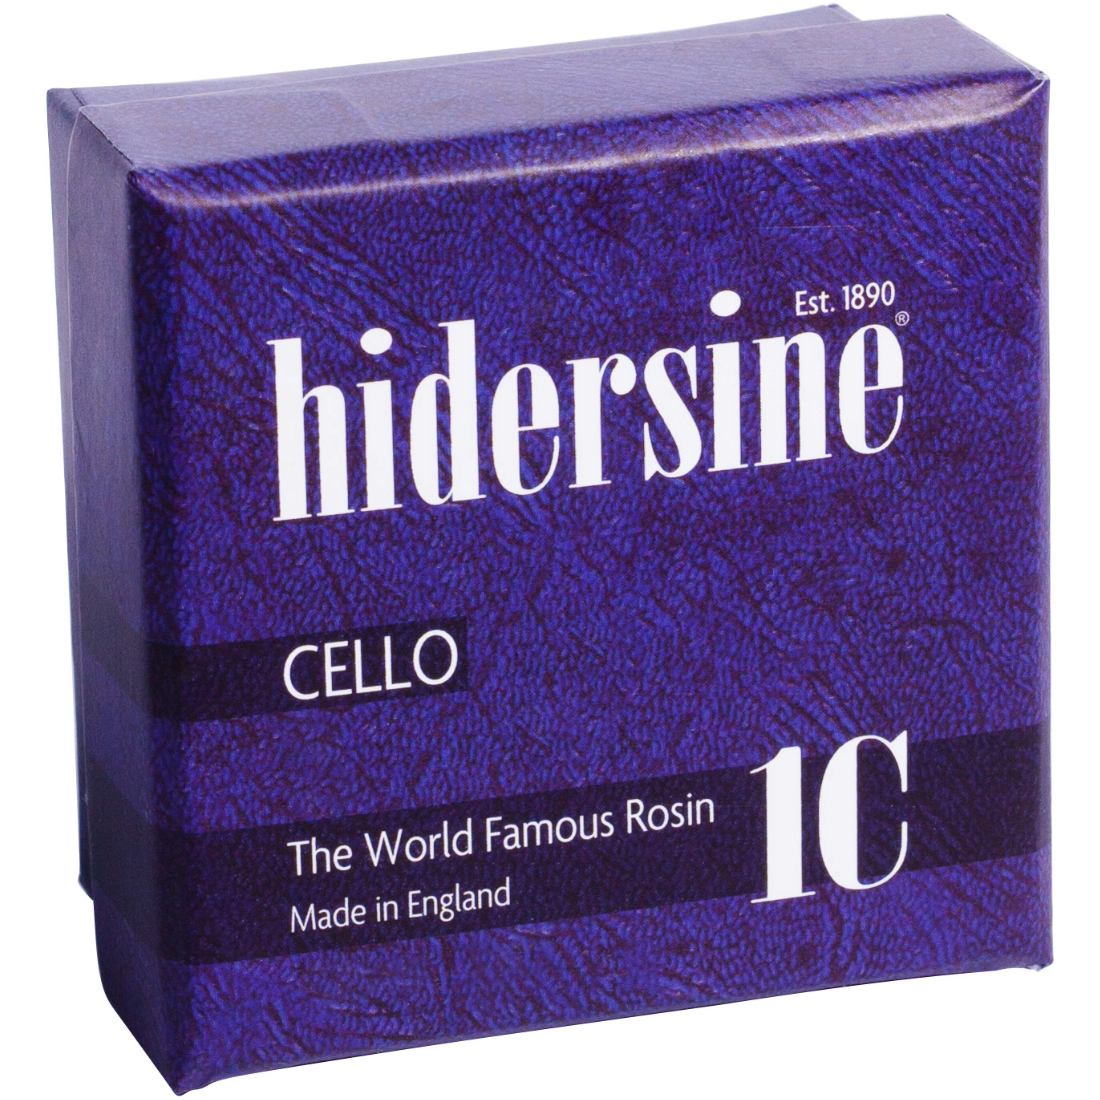 Purple Box of Hidersine 1C Cello Rosin